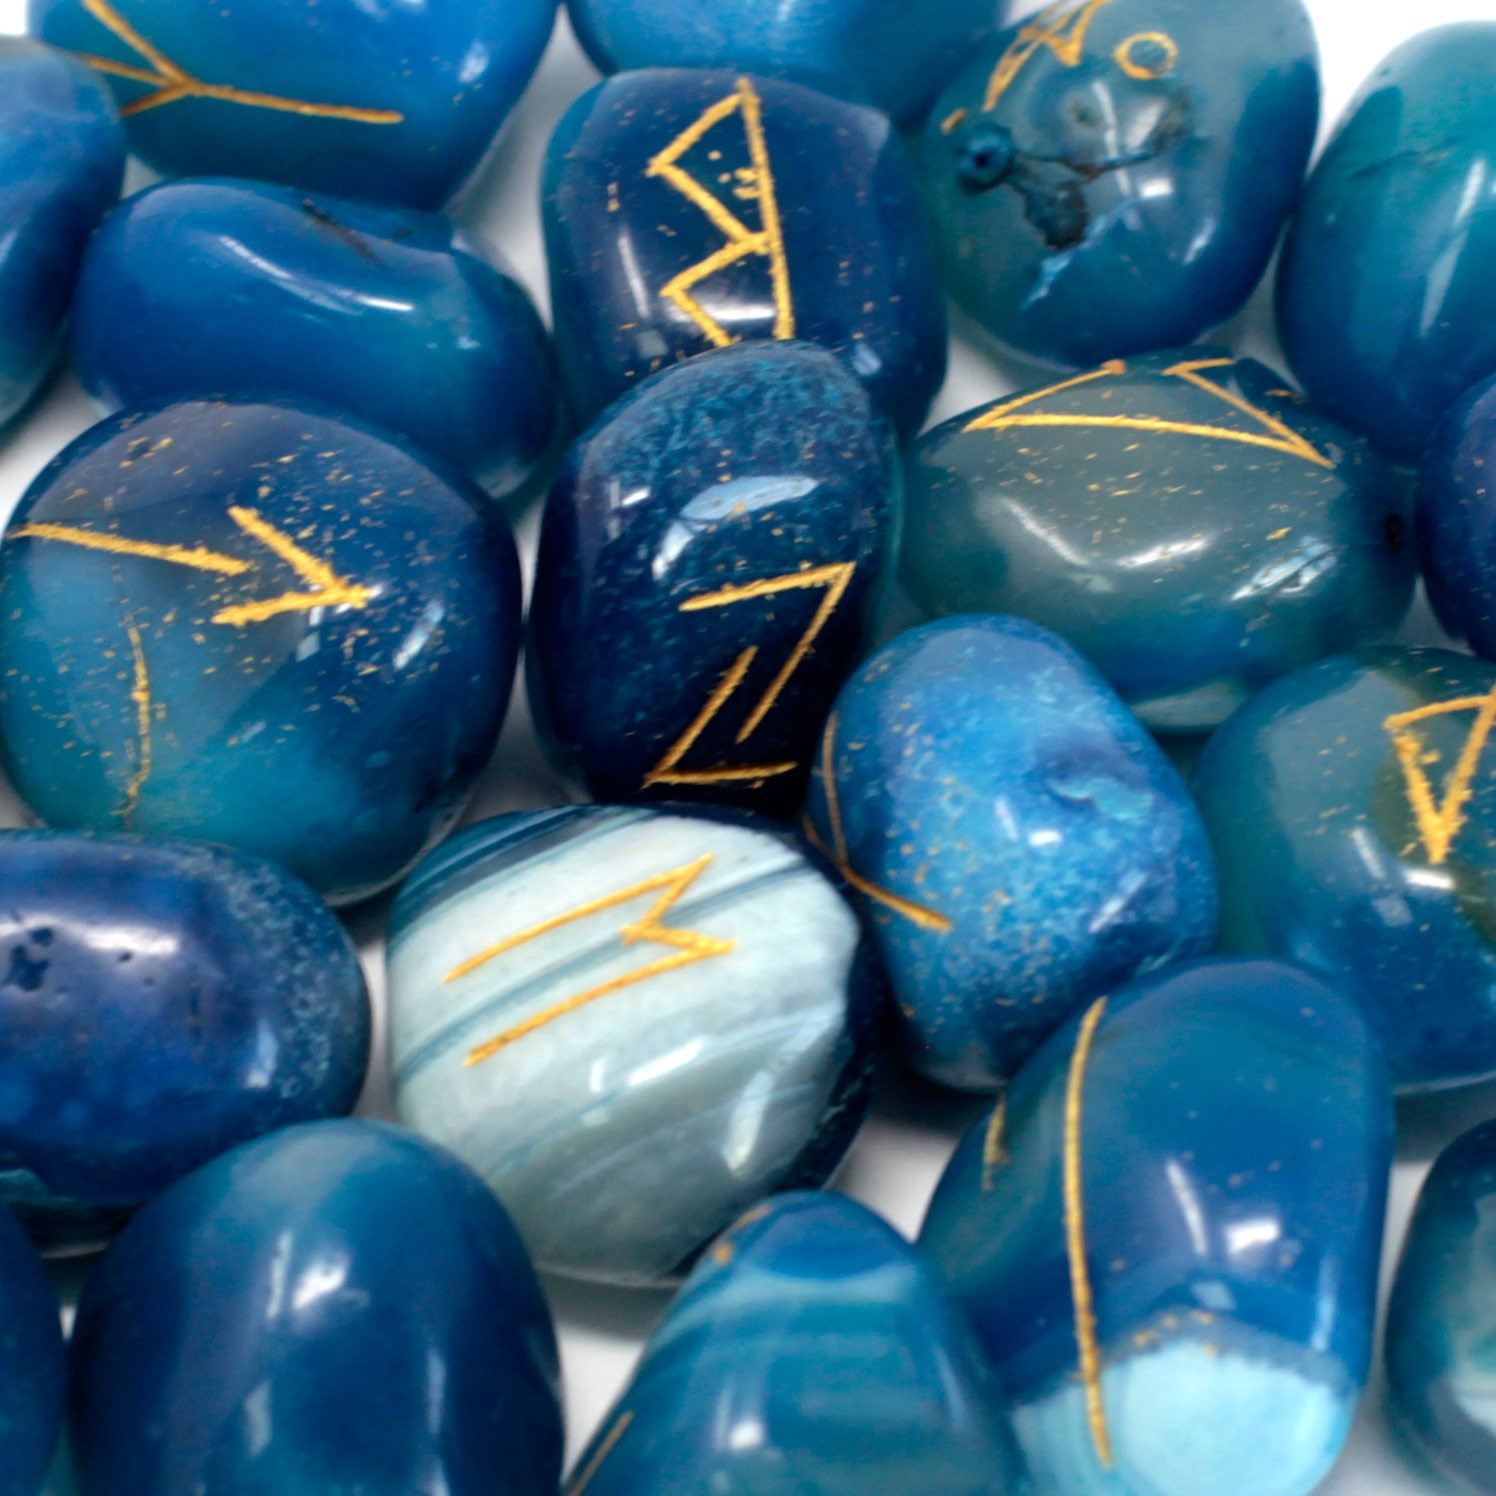 Runové Kameny: nositelé písmen, symbolů a duchovní energie